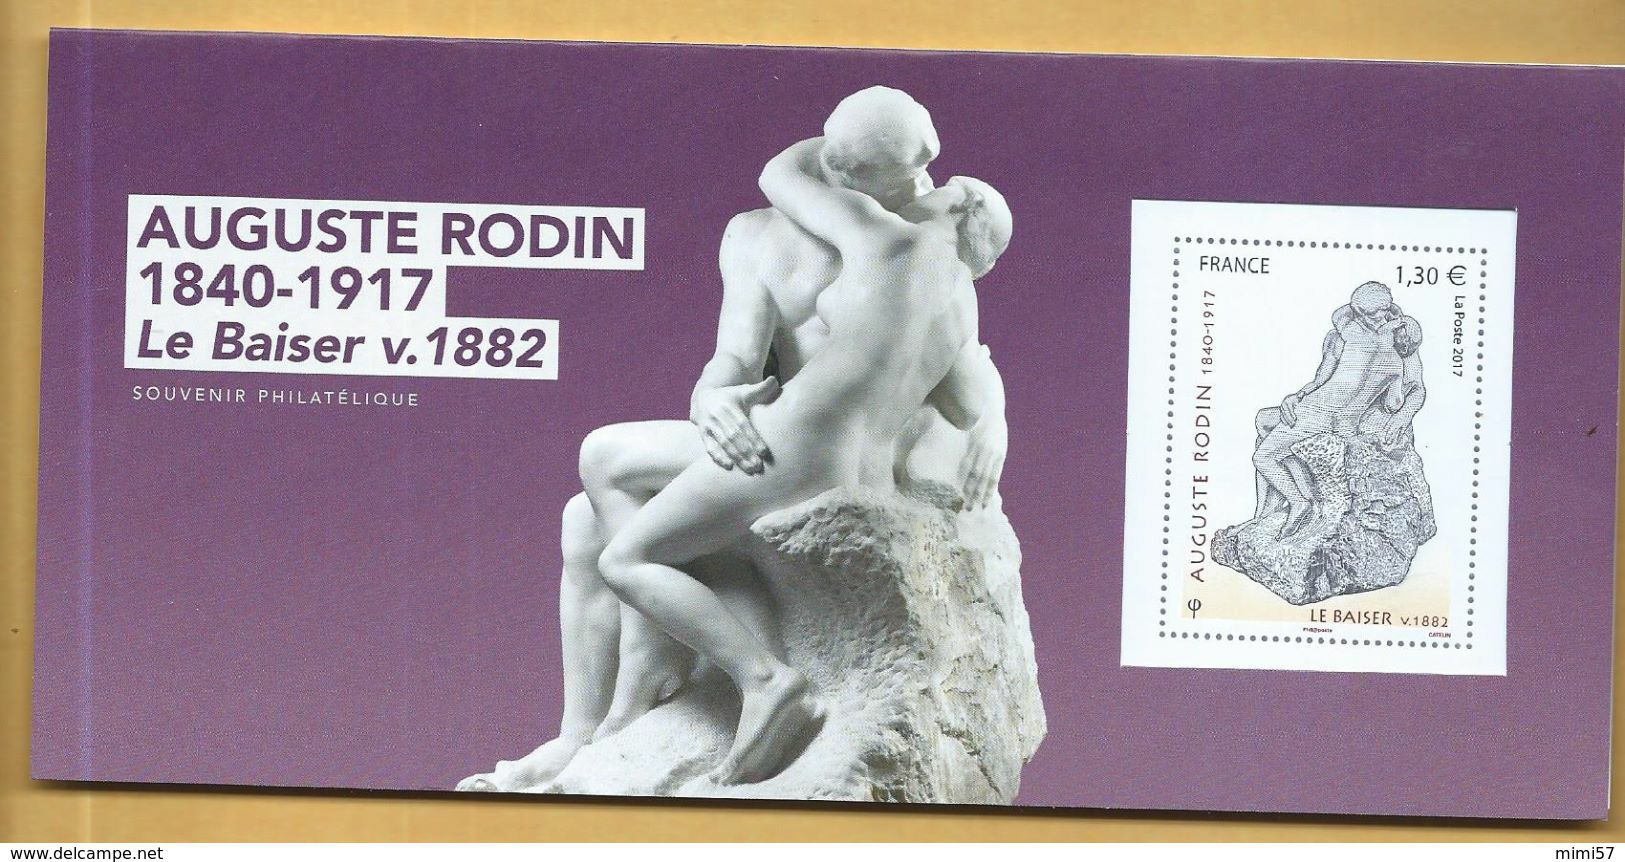 Souvenir Philatélique Auguste Rodin 1€30 - 2017 - Collectors